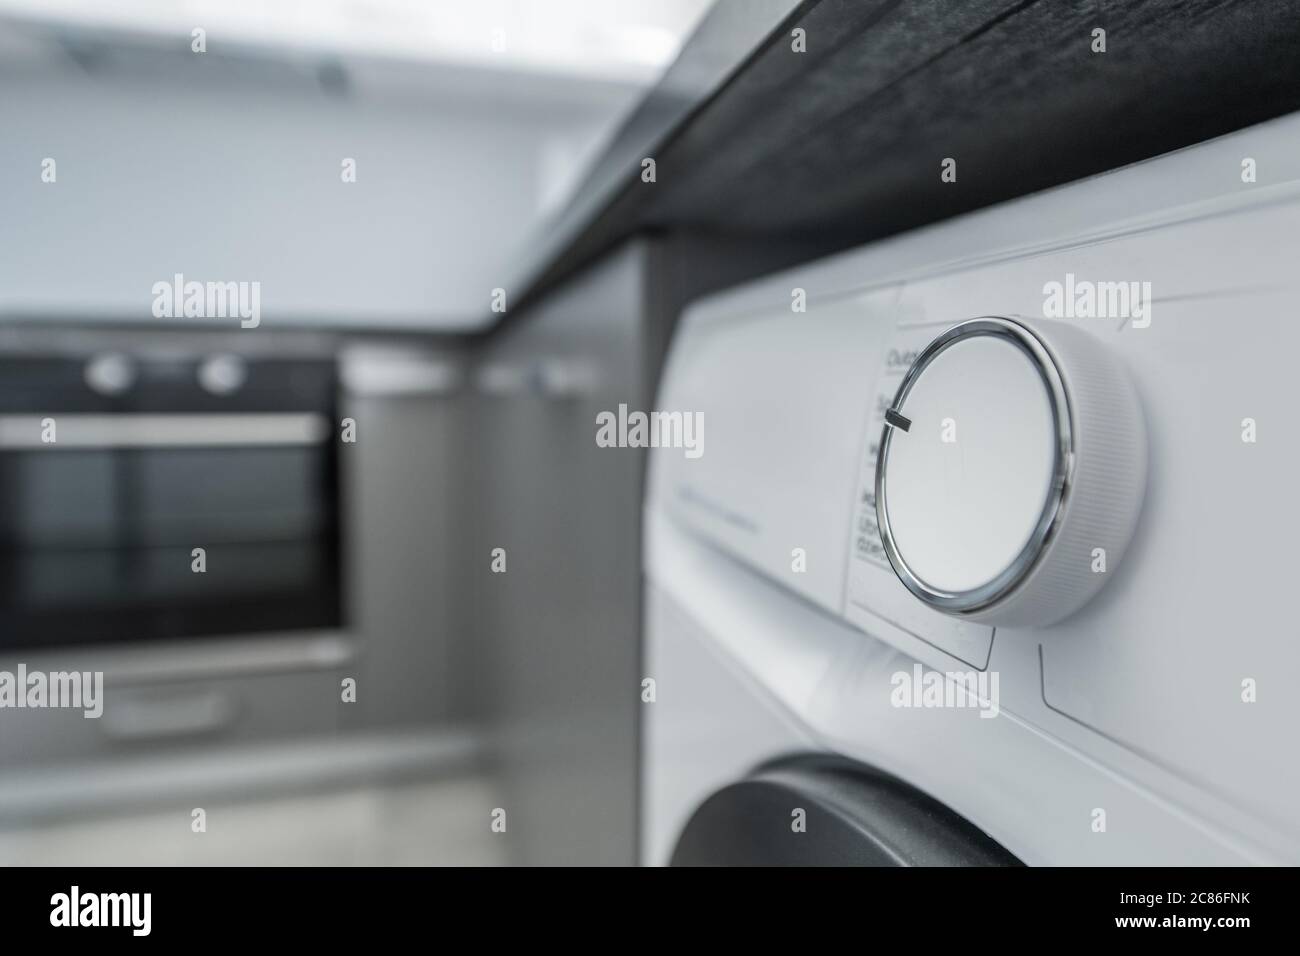 Moderne Elegante Waschmaschine Im Apartment Küche Raum. Hausgerät zum Waschen von Wäsche. Taste Für Das Programmieren Des Wählens. Stockfoto